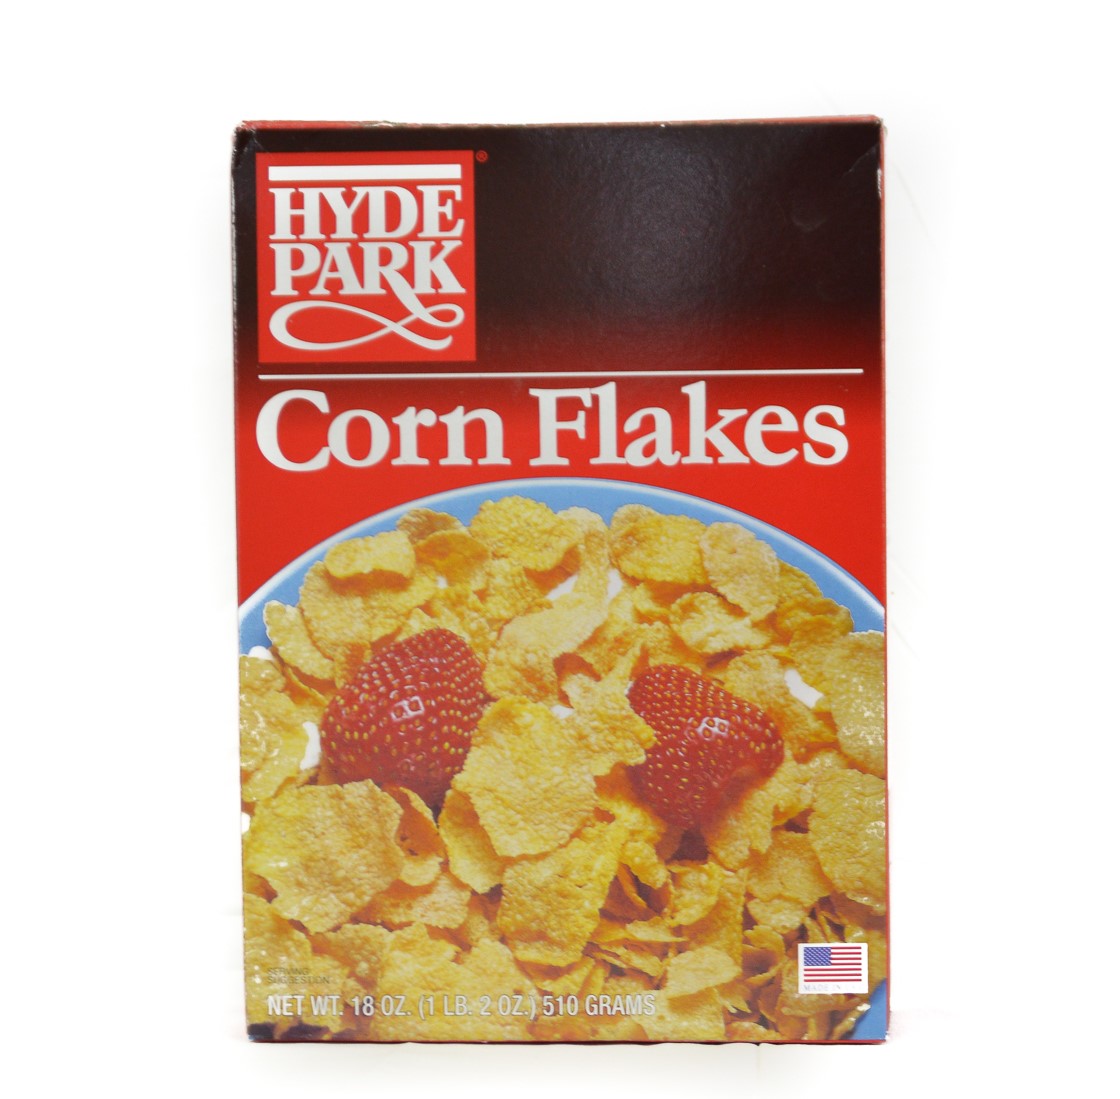 Corn Flakes Hyde Park (3 Boxes)